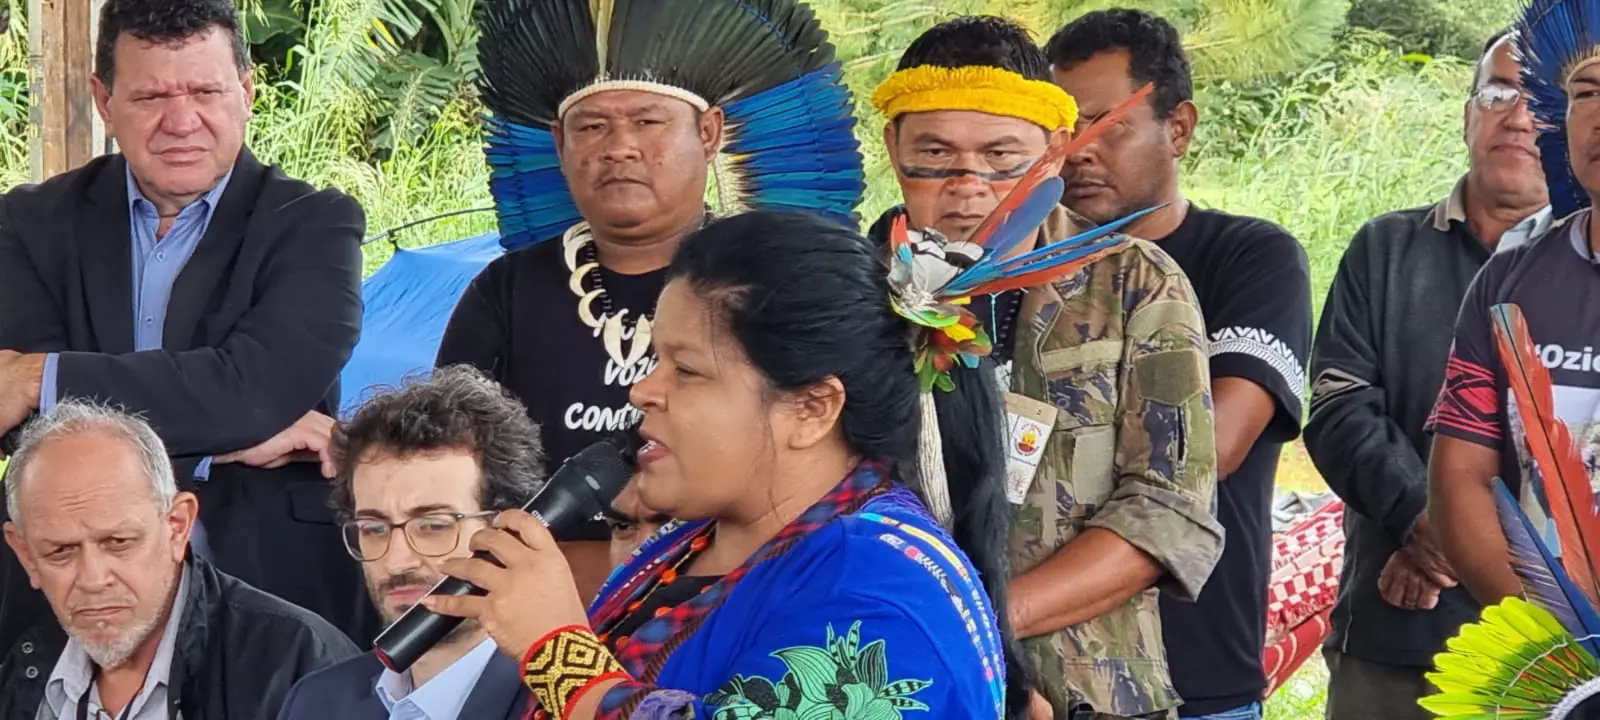 Ministra dos Povos Indígenas vem a MS pela segunda vez para assembleia do Povo Terena 